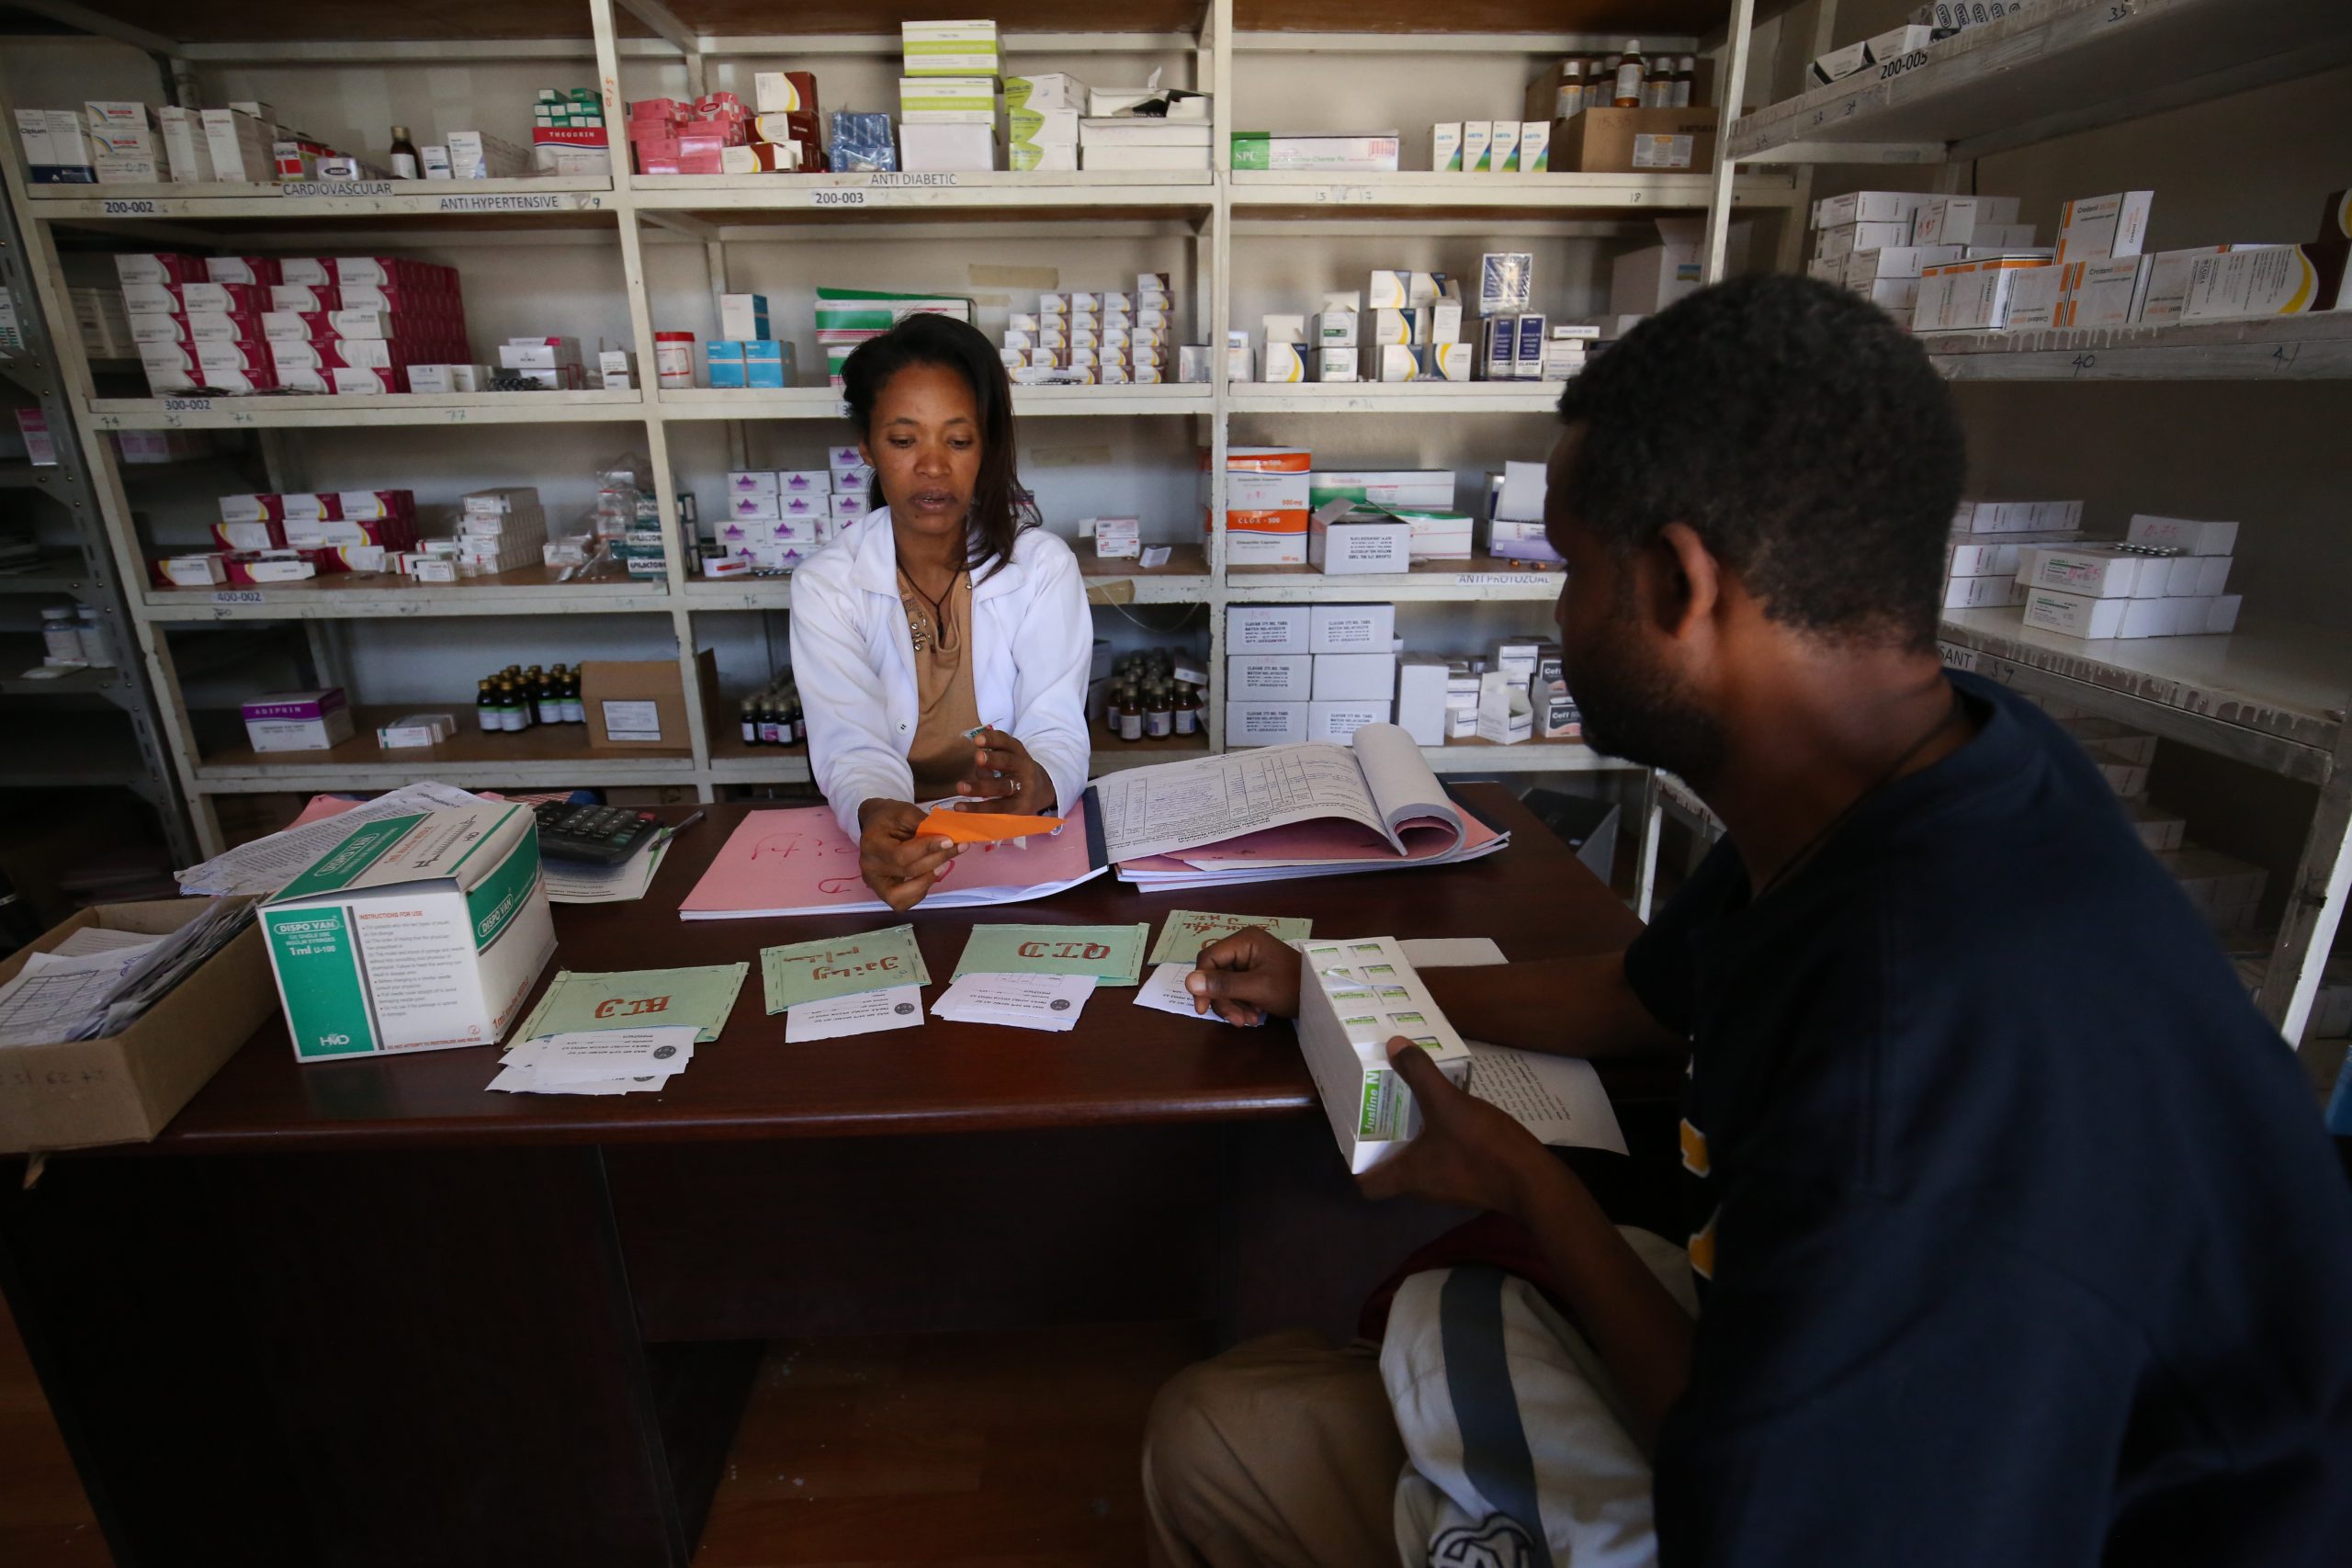 Ensemble de services de santé essentiels pour l’Éthiopie – sur la base d’éléments probants concernant le coût et le rapport coût-efficacité